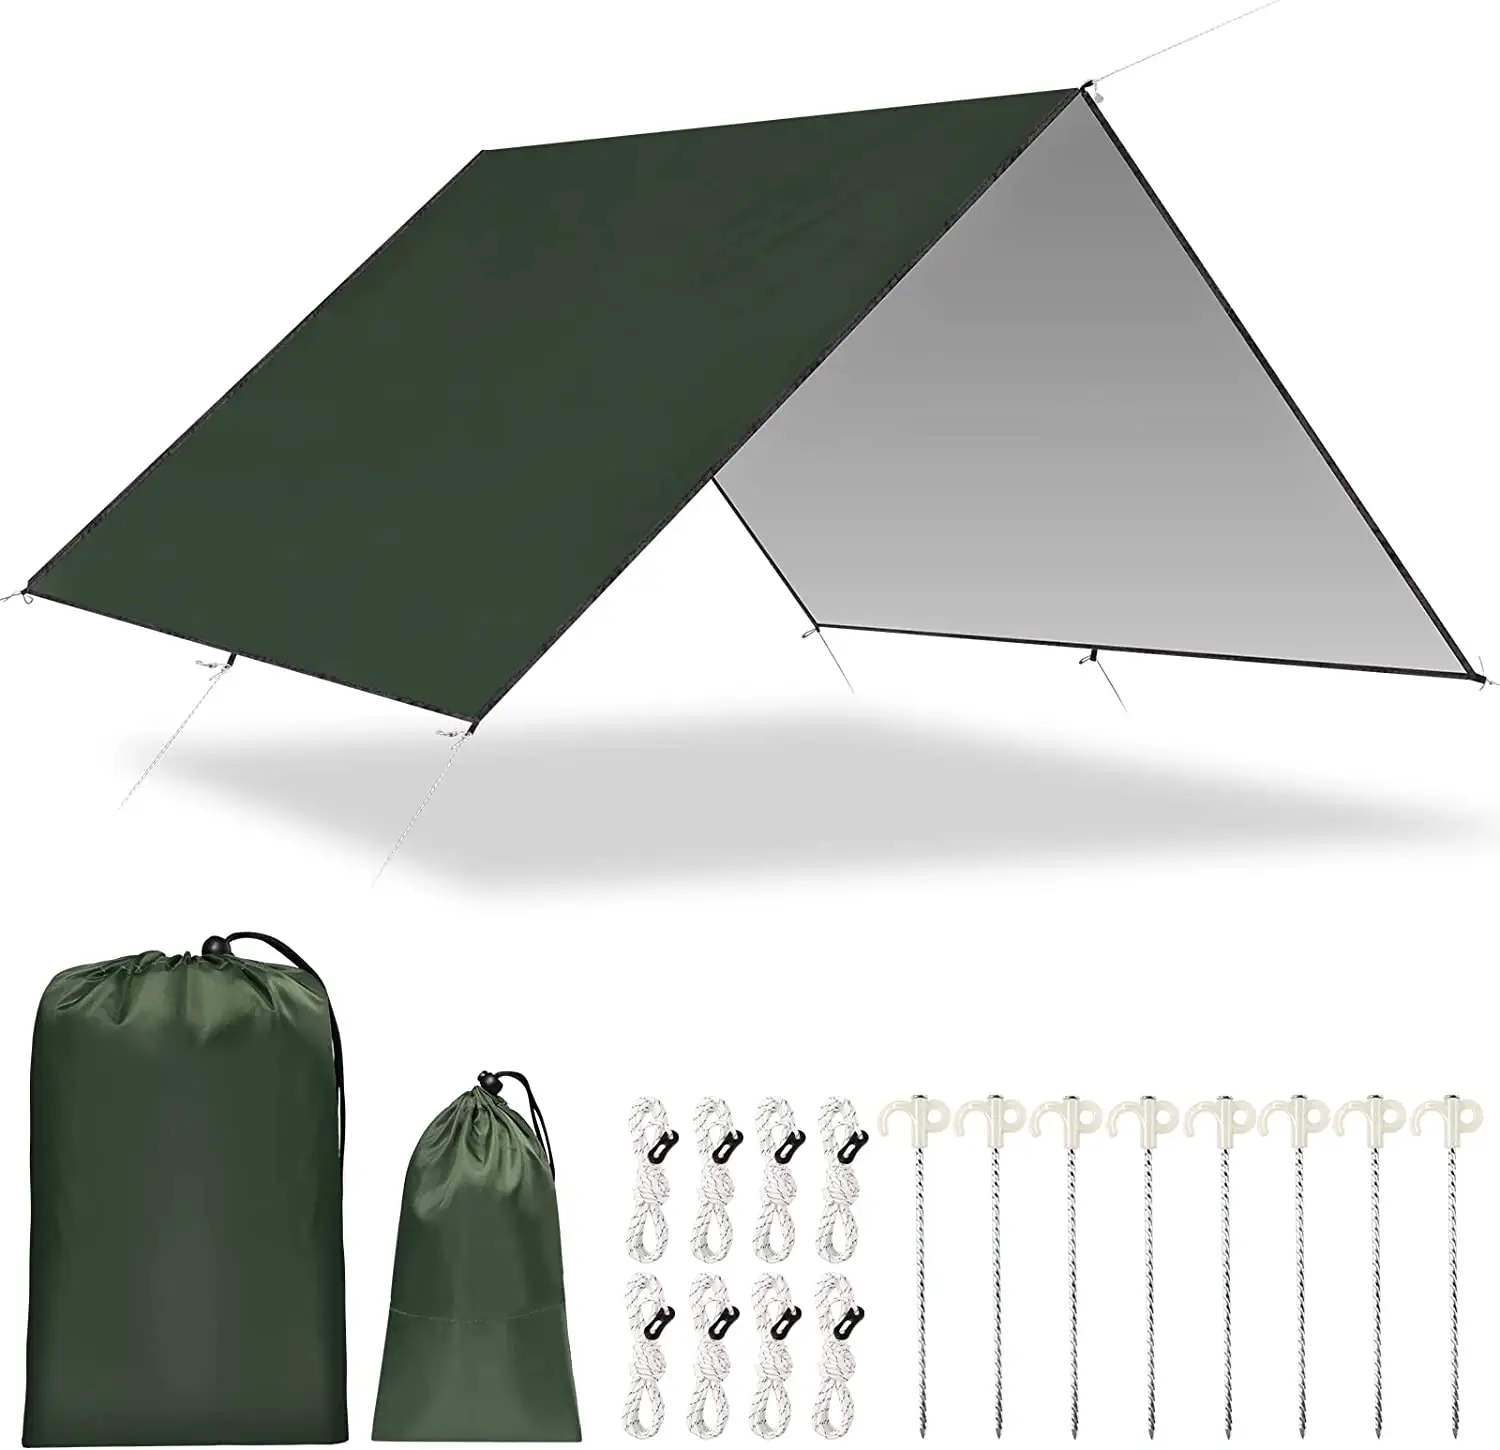 방수 캠핑 방수포, 해먹 레인 플라이 안티 UV 태양 대피소 야외 캠핑 텐트 방수포 방풍 방설